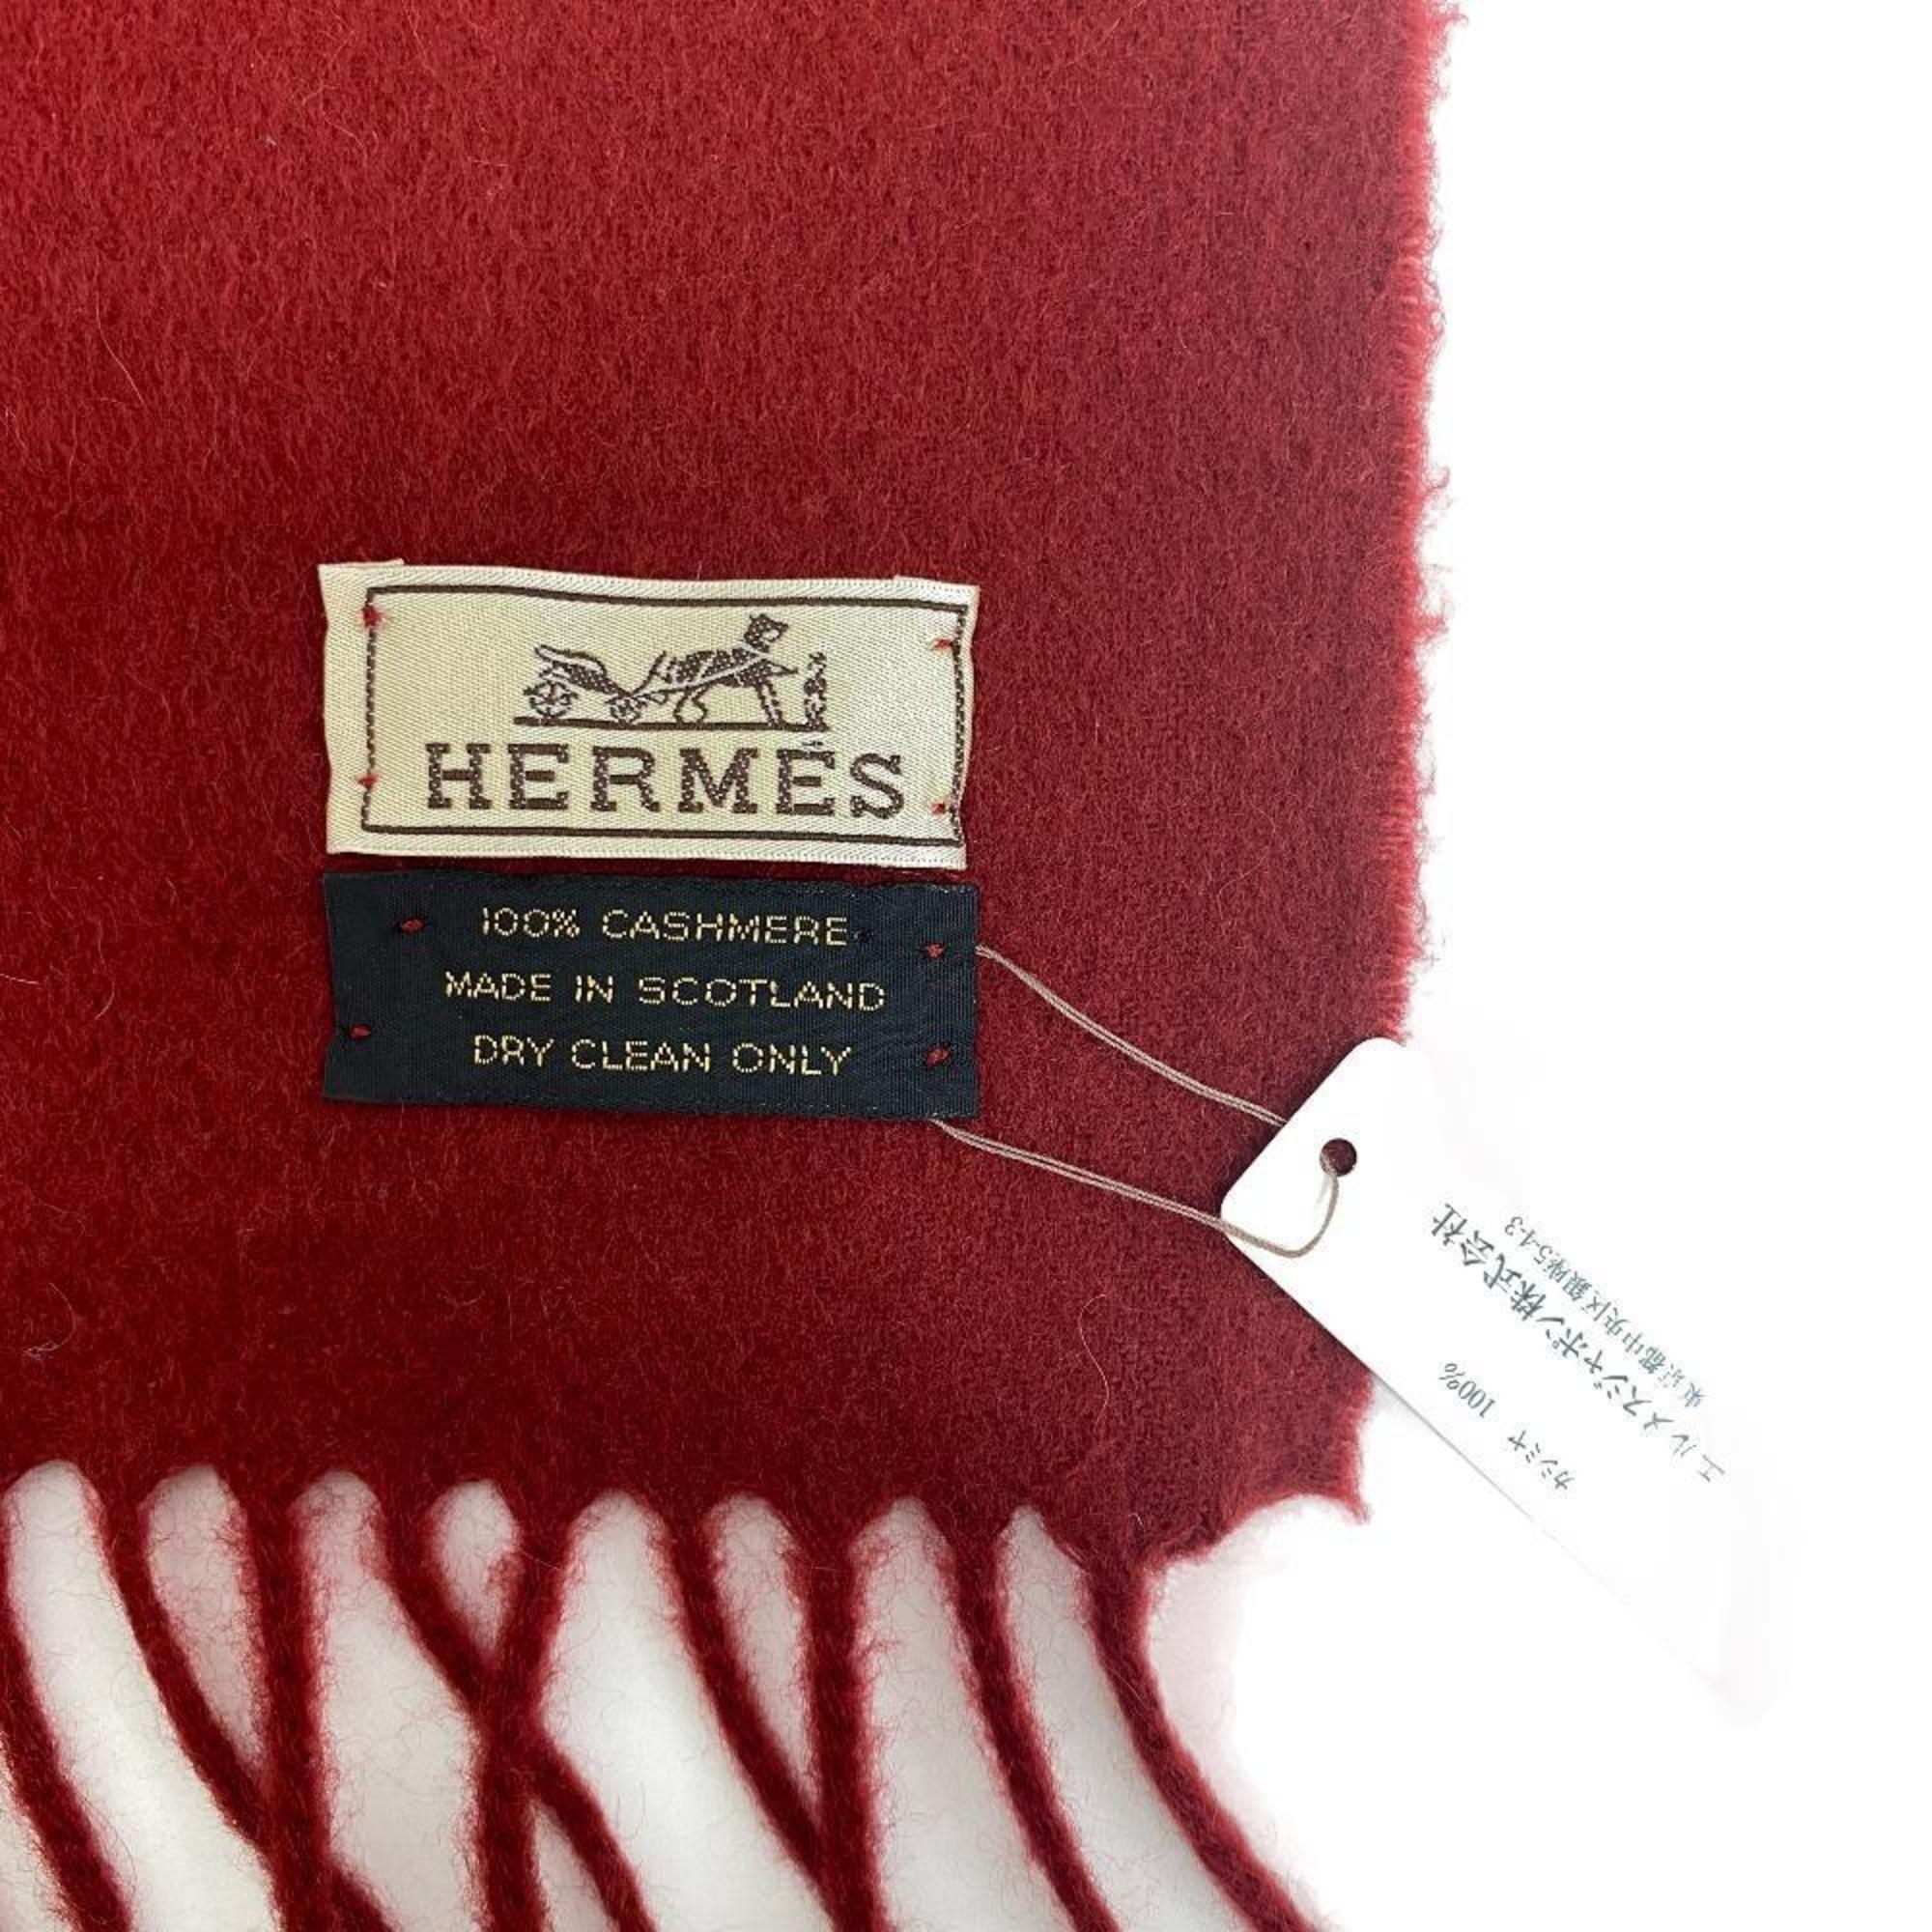 HERMES Hermes scarf red unisex Z0006290